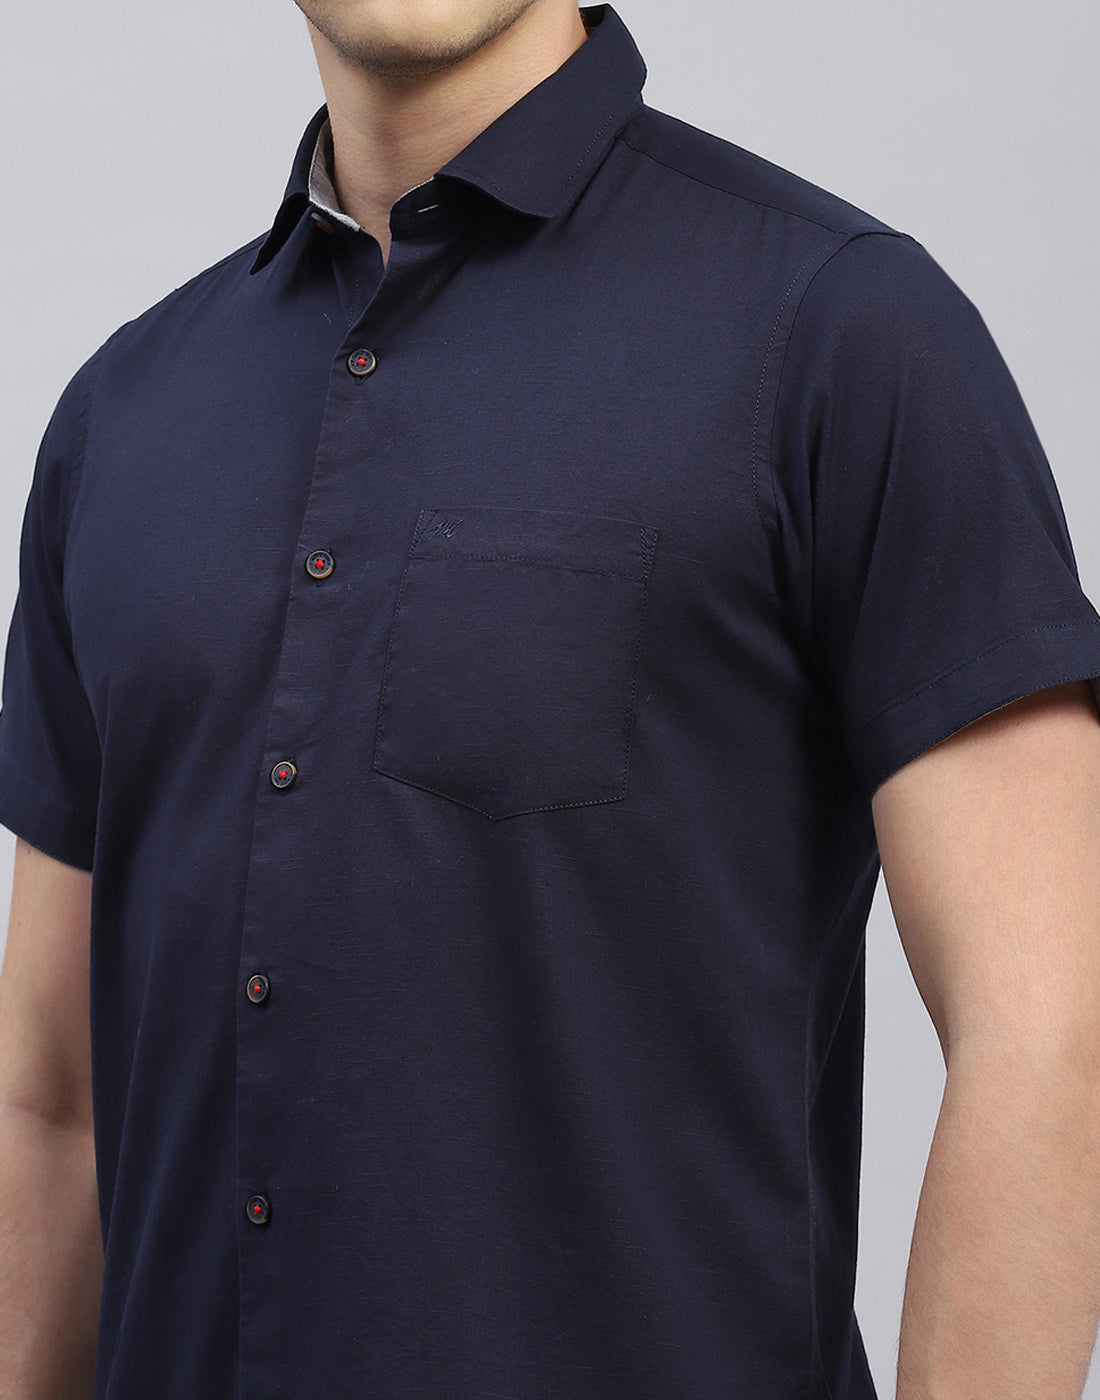 Men Navy Blue Solid Collar Half Sleeve Shirt